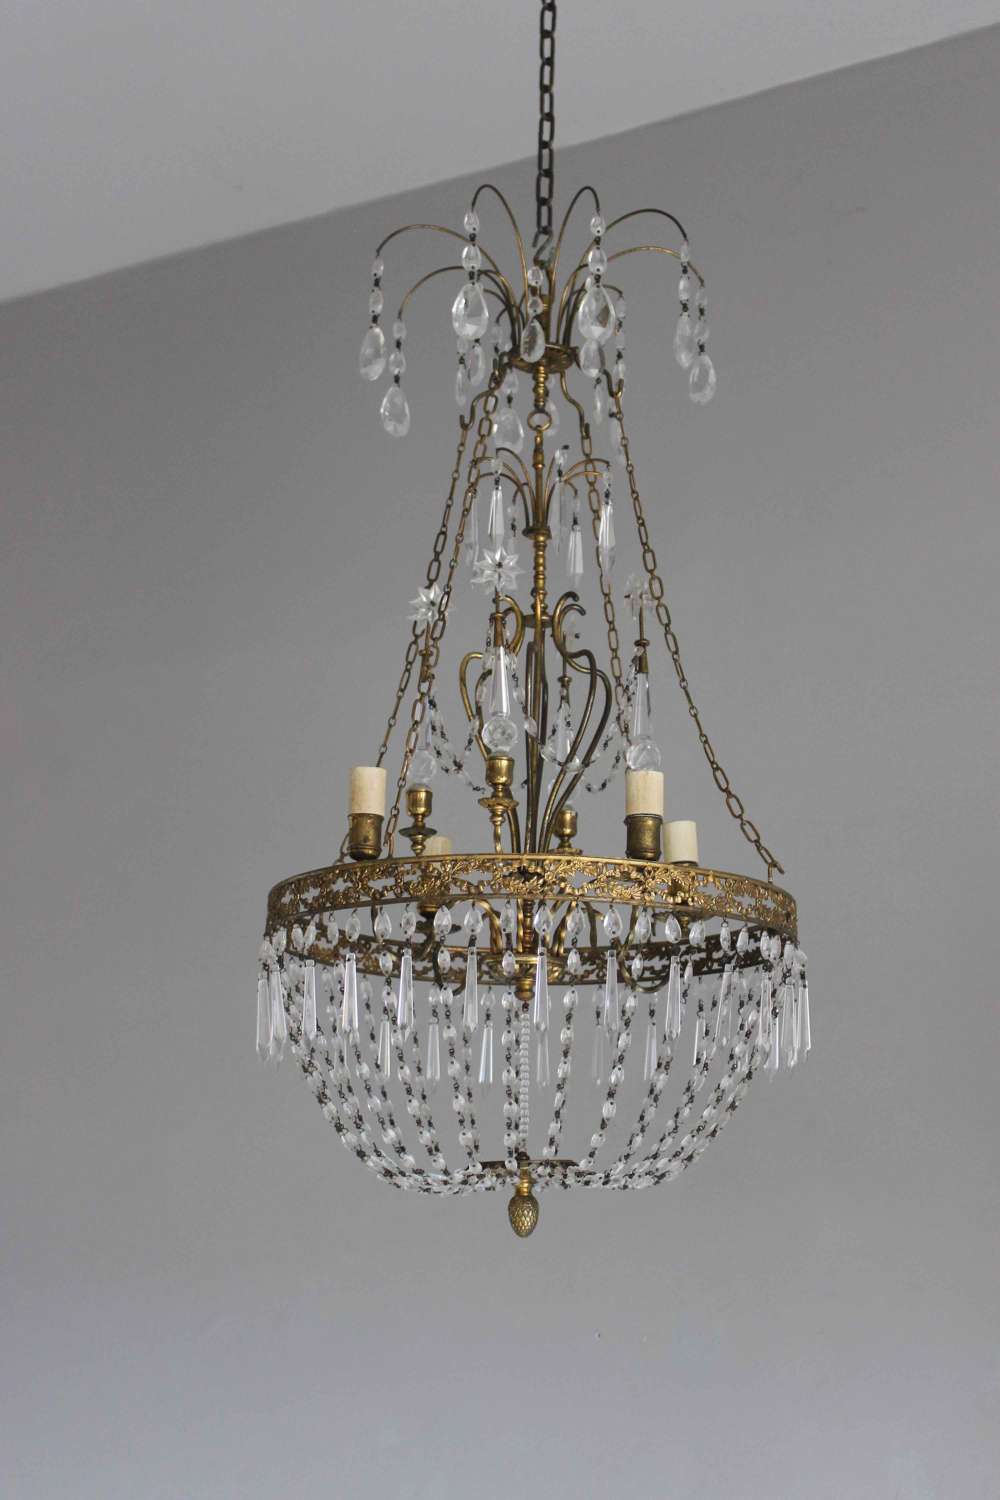 Swedish style pendant chandelier